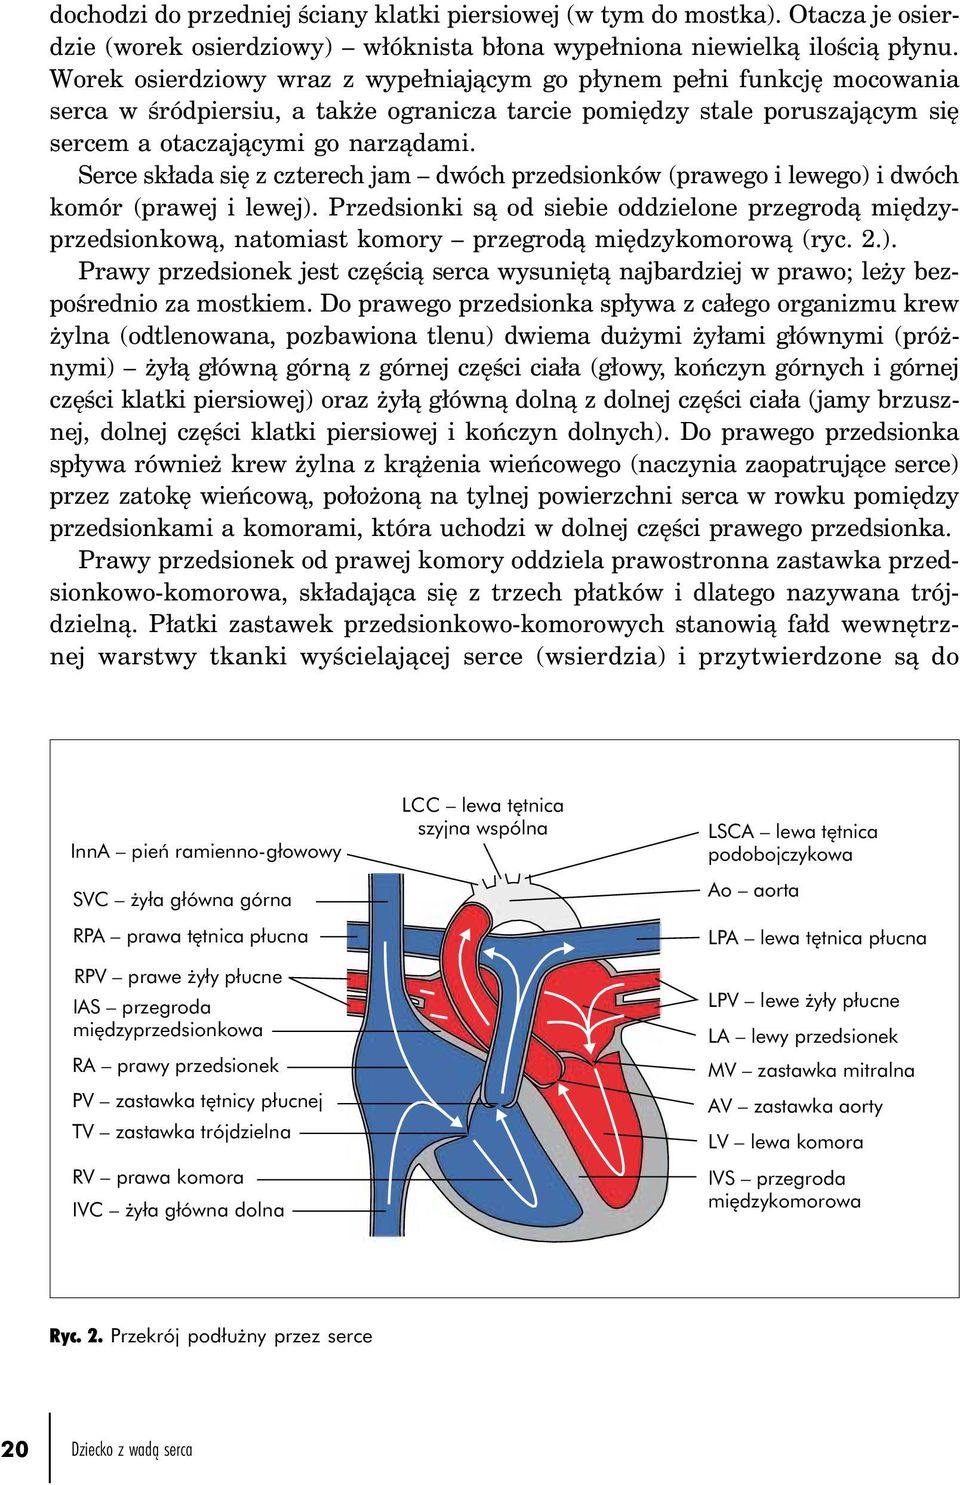 Serce składa się z czterech jam dwóch przedsionków (prawego i lewego) i dwóch komór (prawej i lewej).